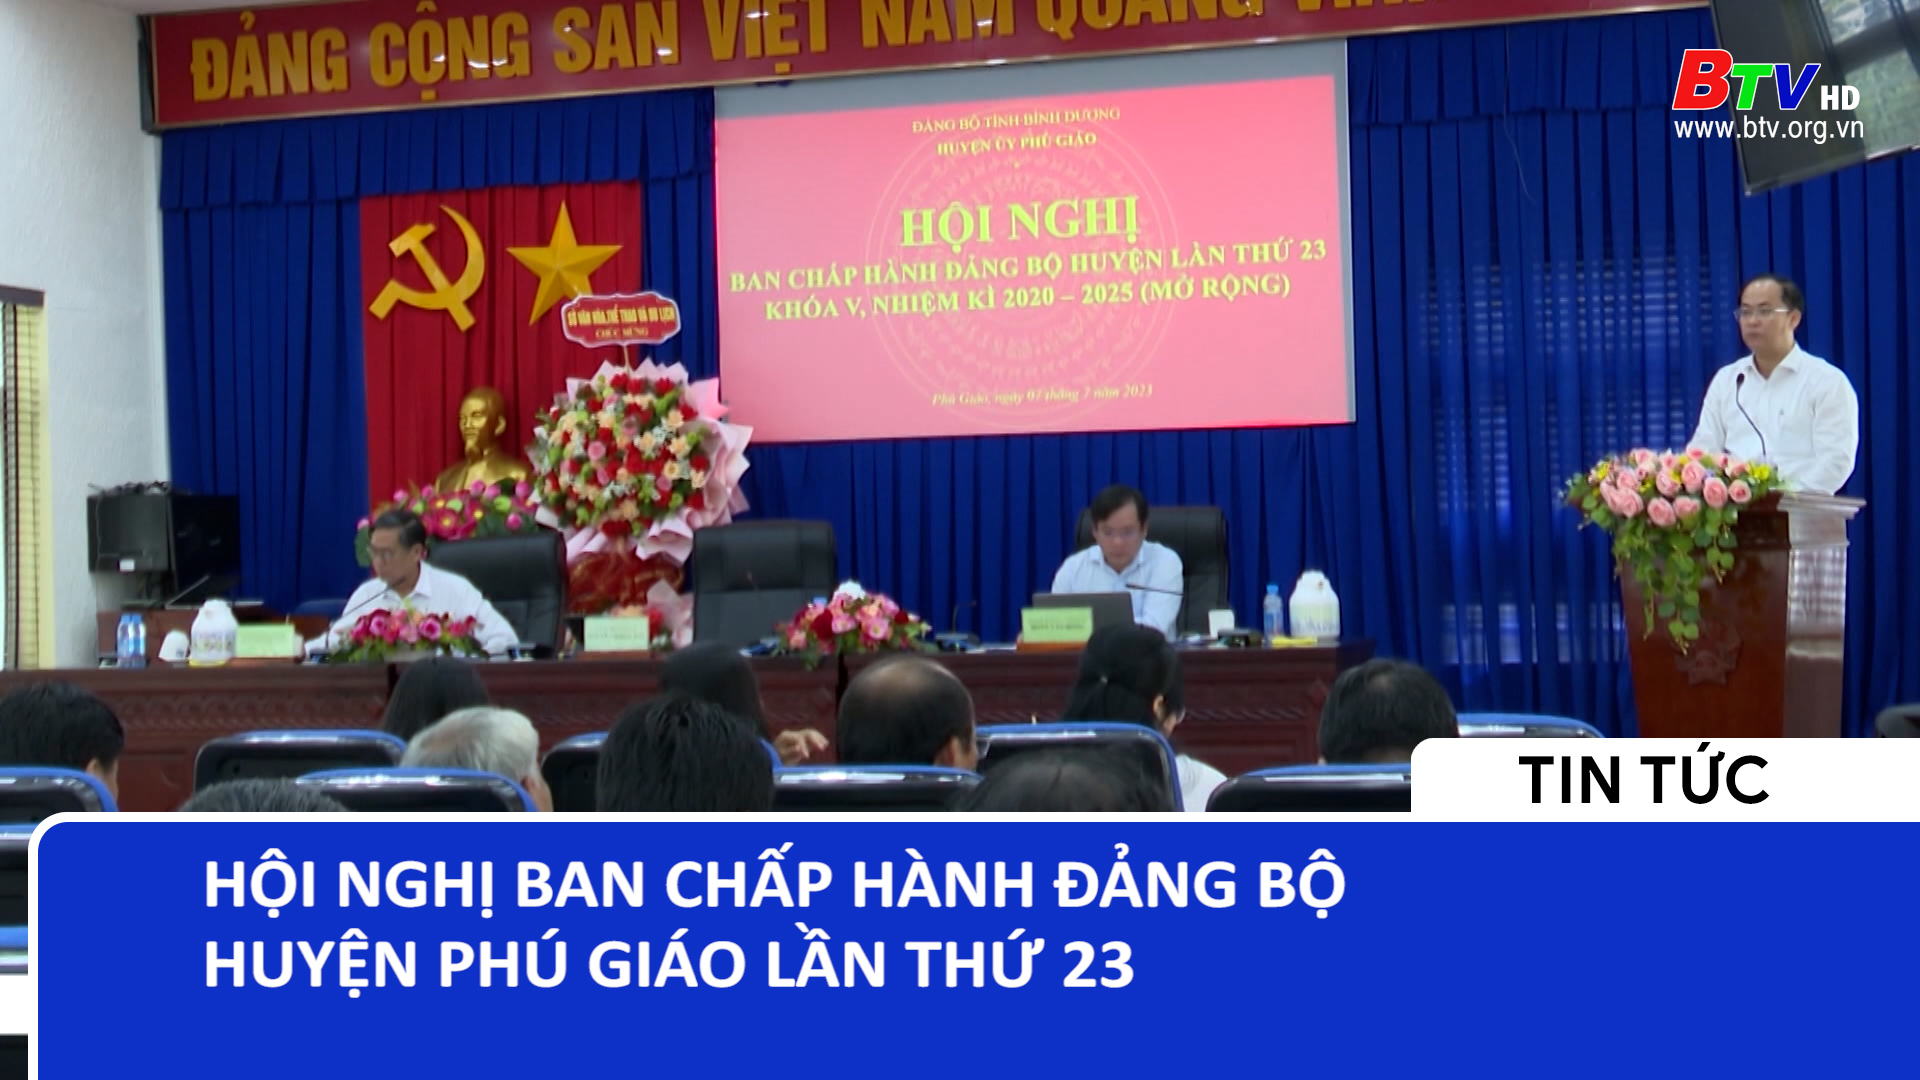 Hội nghị Ban chấp hành Đảng bộ huyện Phú Giáo lần thứ 23